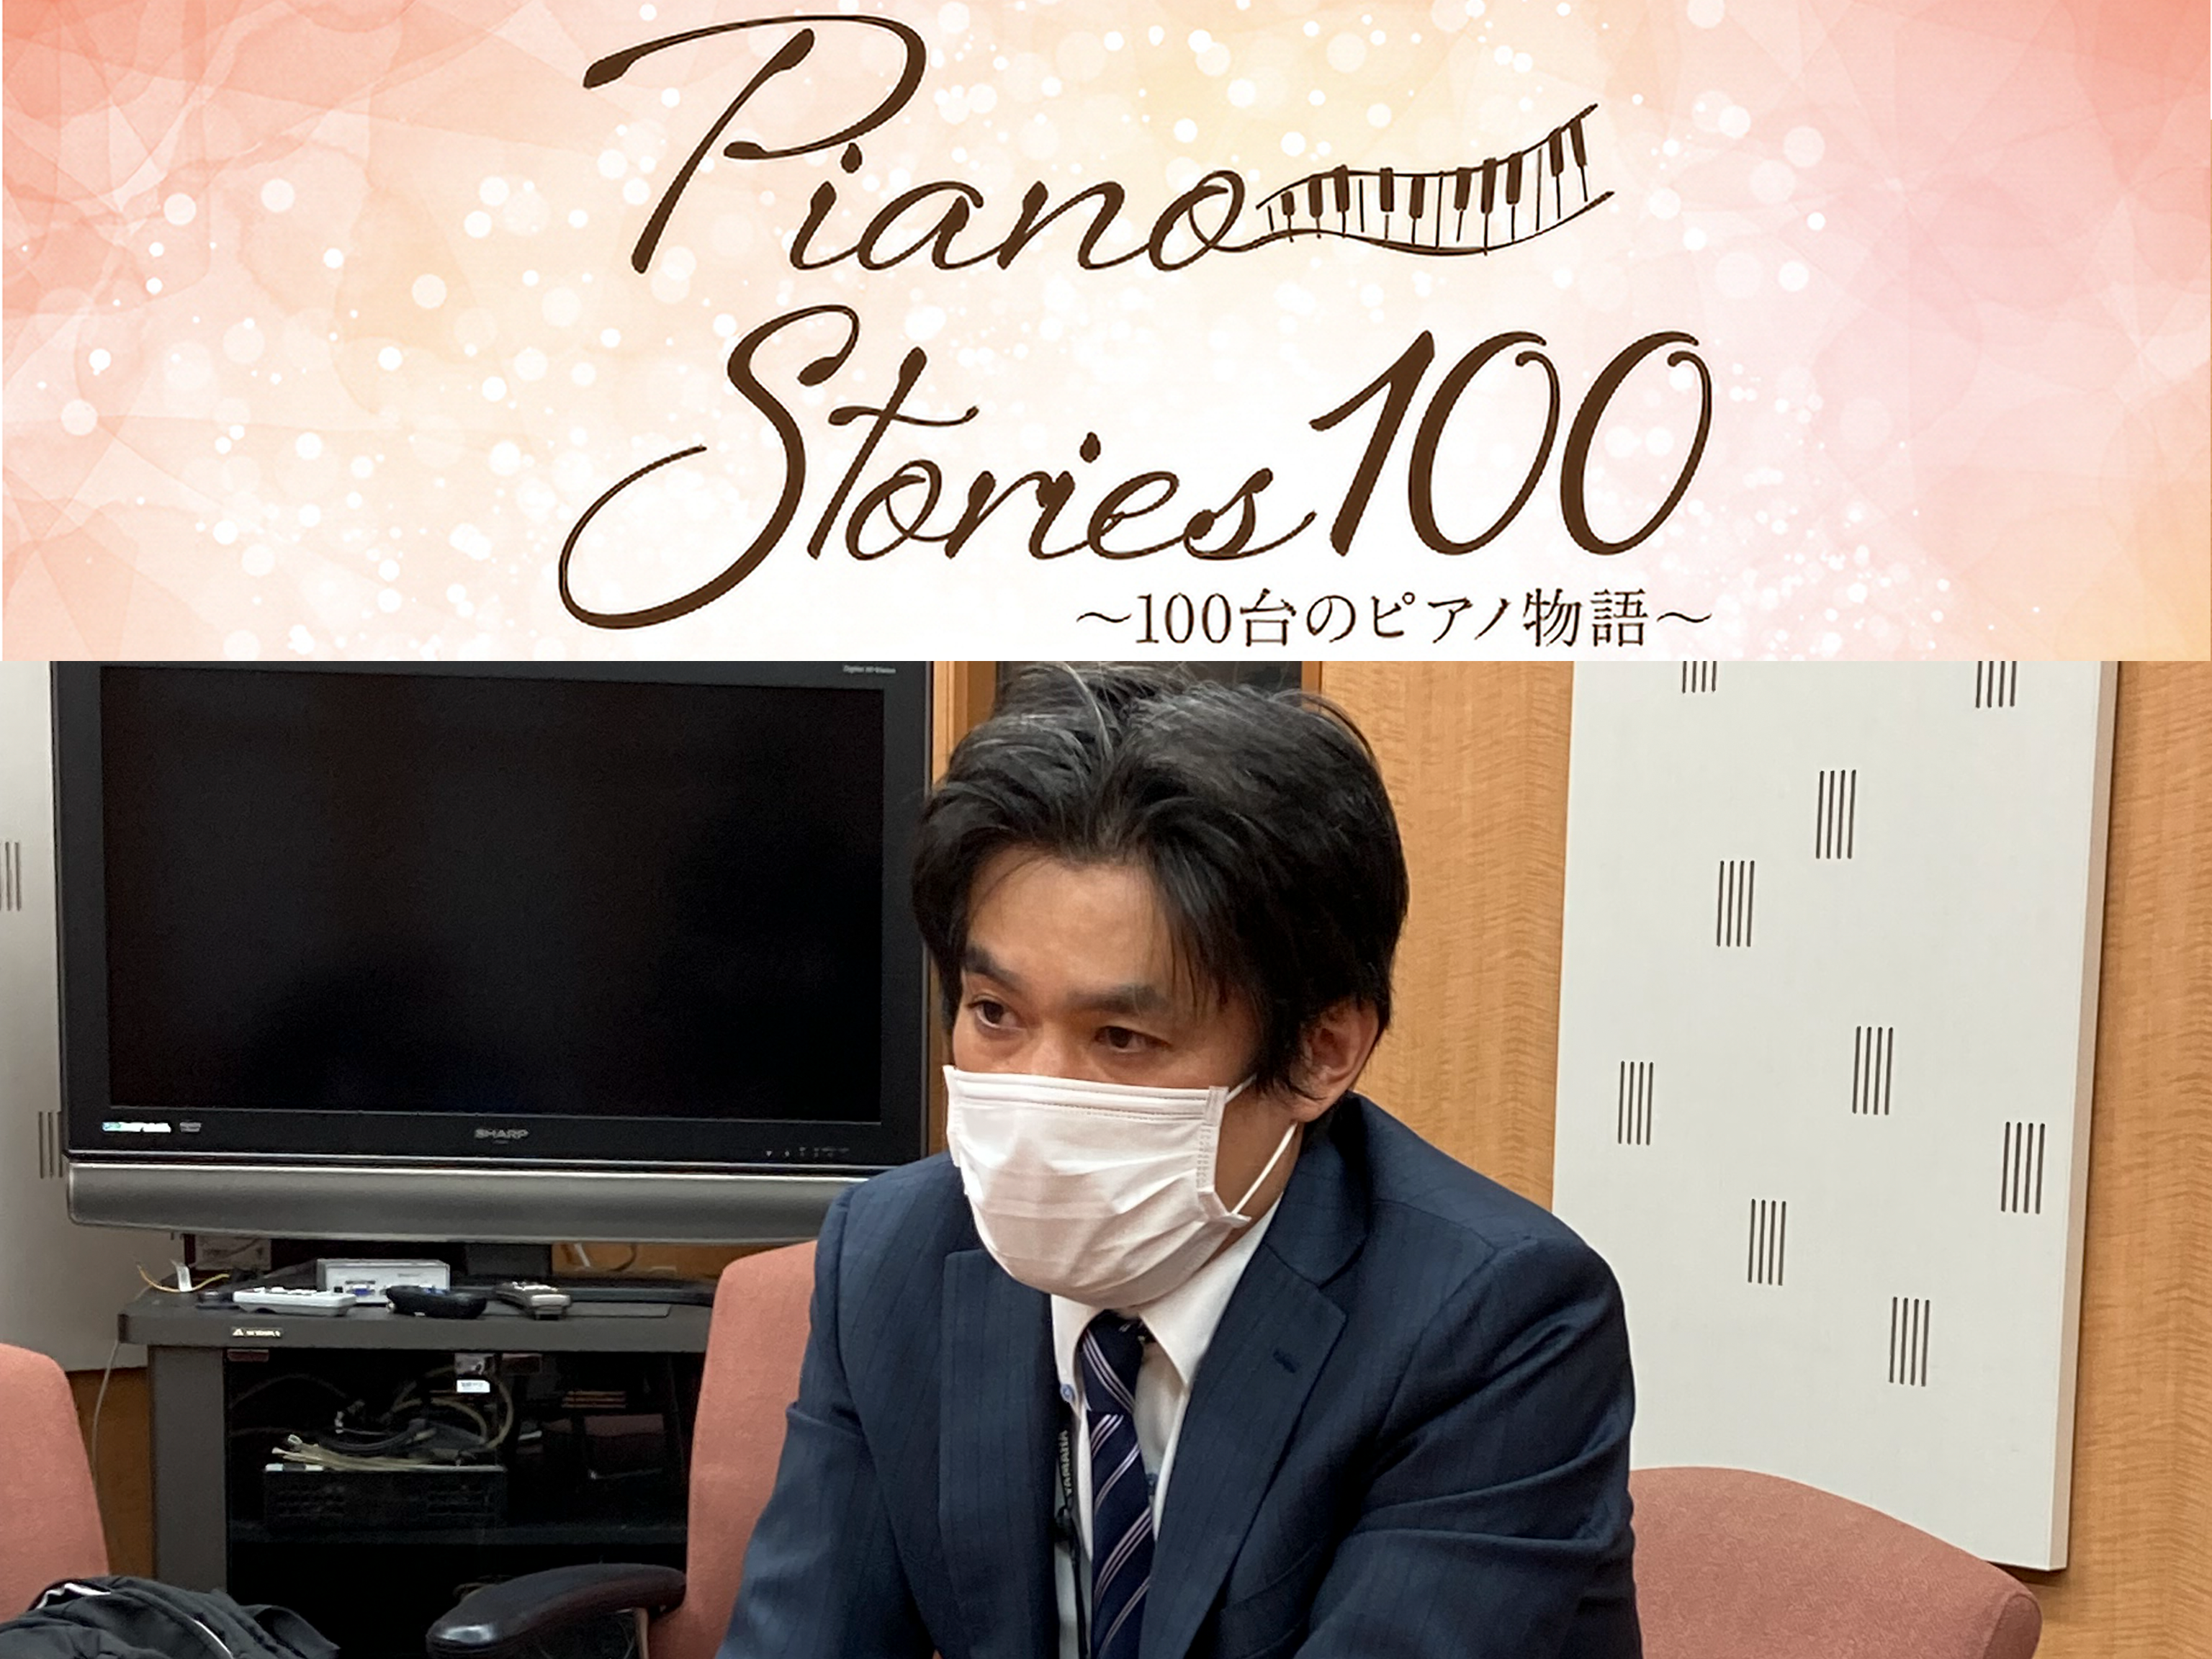 Piano Stories 100 ～100台のピアノ物語～ <br> ピアノに新たな息吹をつなぐ人たちへのスペシャルインタビュー《メーカー編》